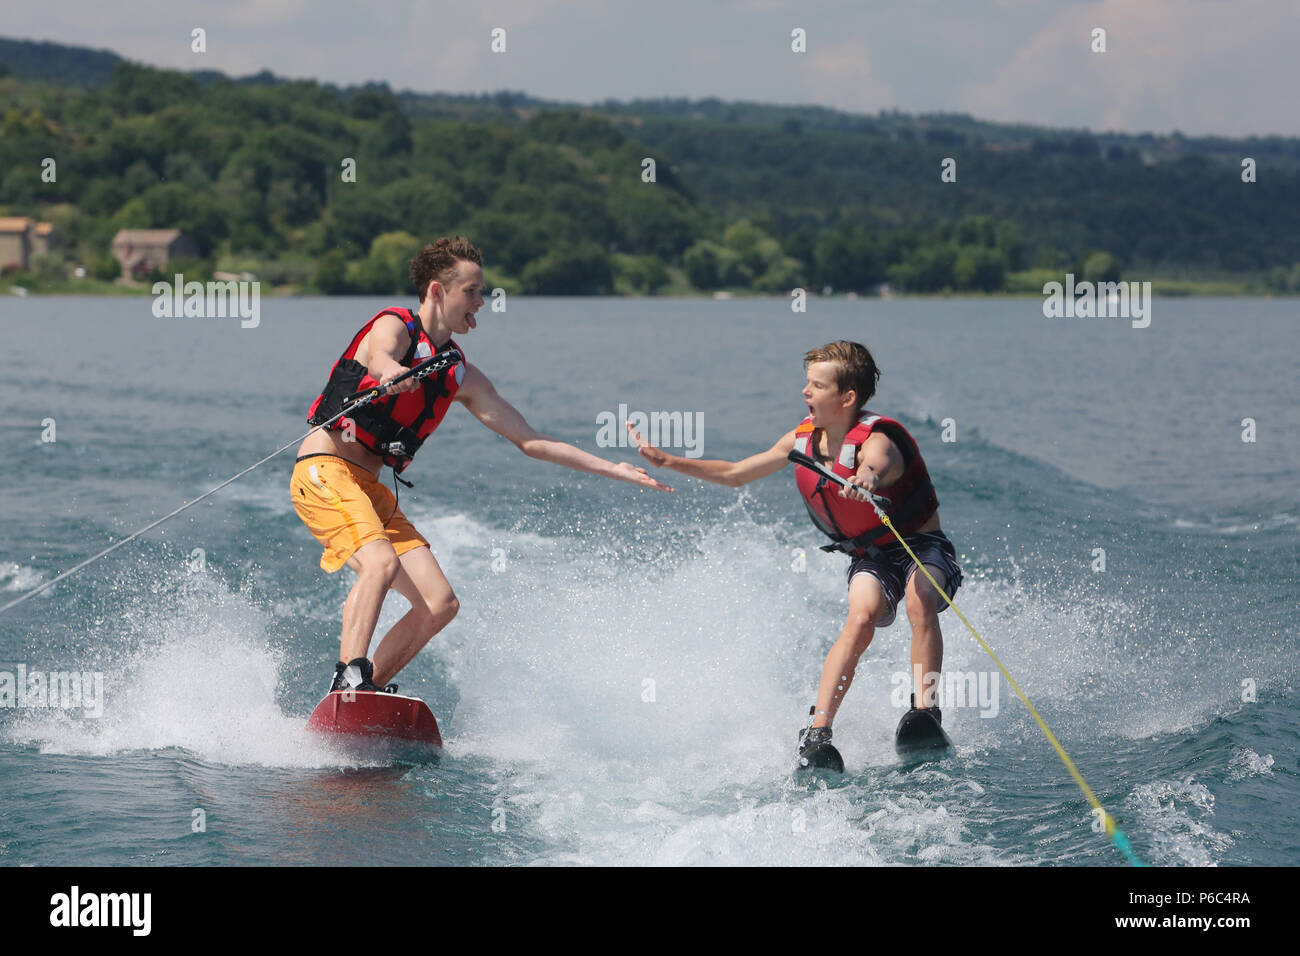 Capodimonte, Italy, boys go water skiing on Lake Bolsena Stock Photo